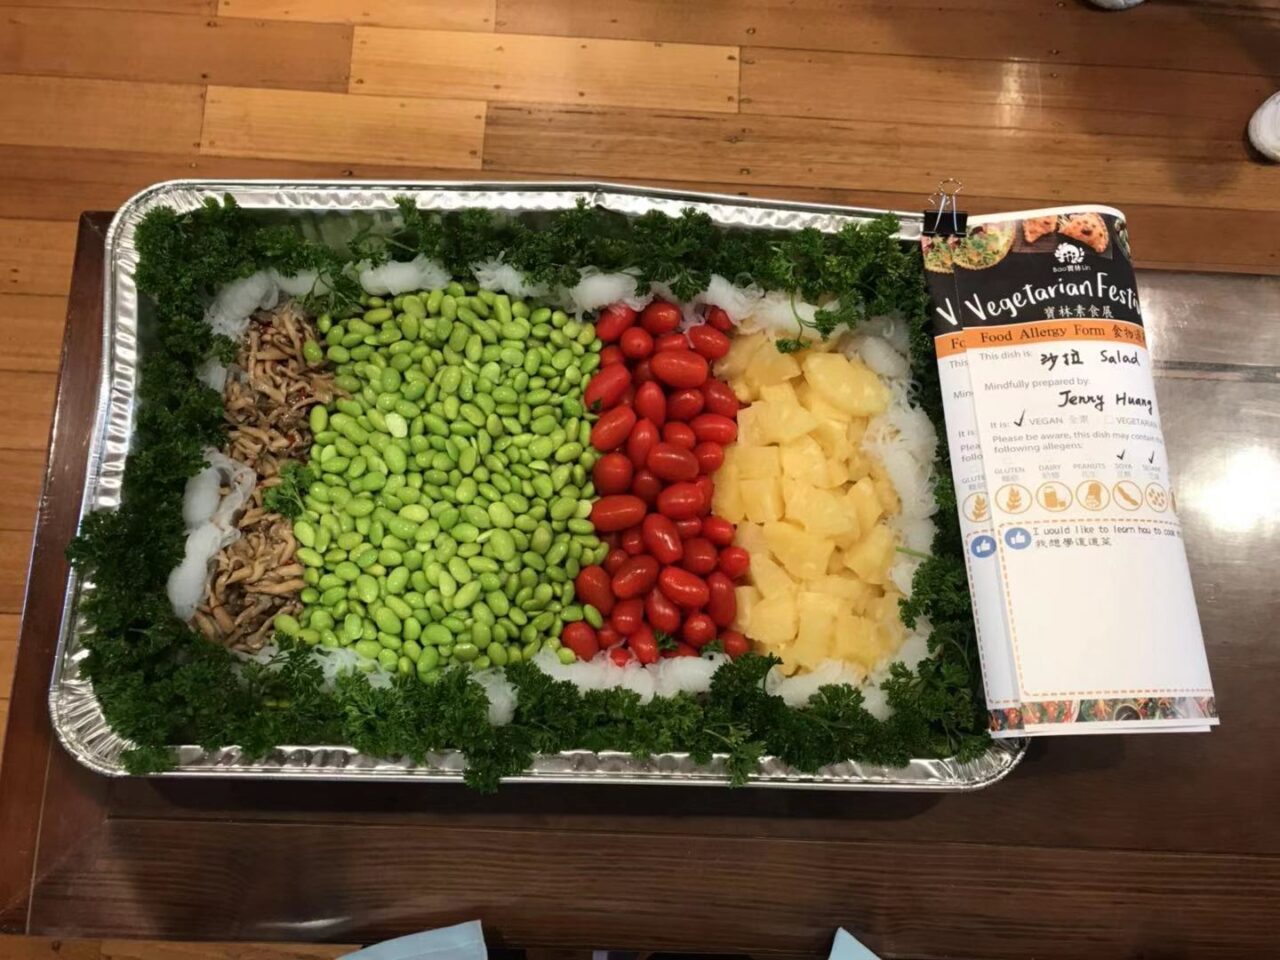 2019 寶林素食展 Vegetarian Festival